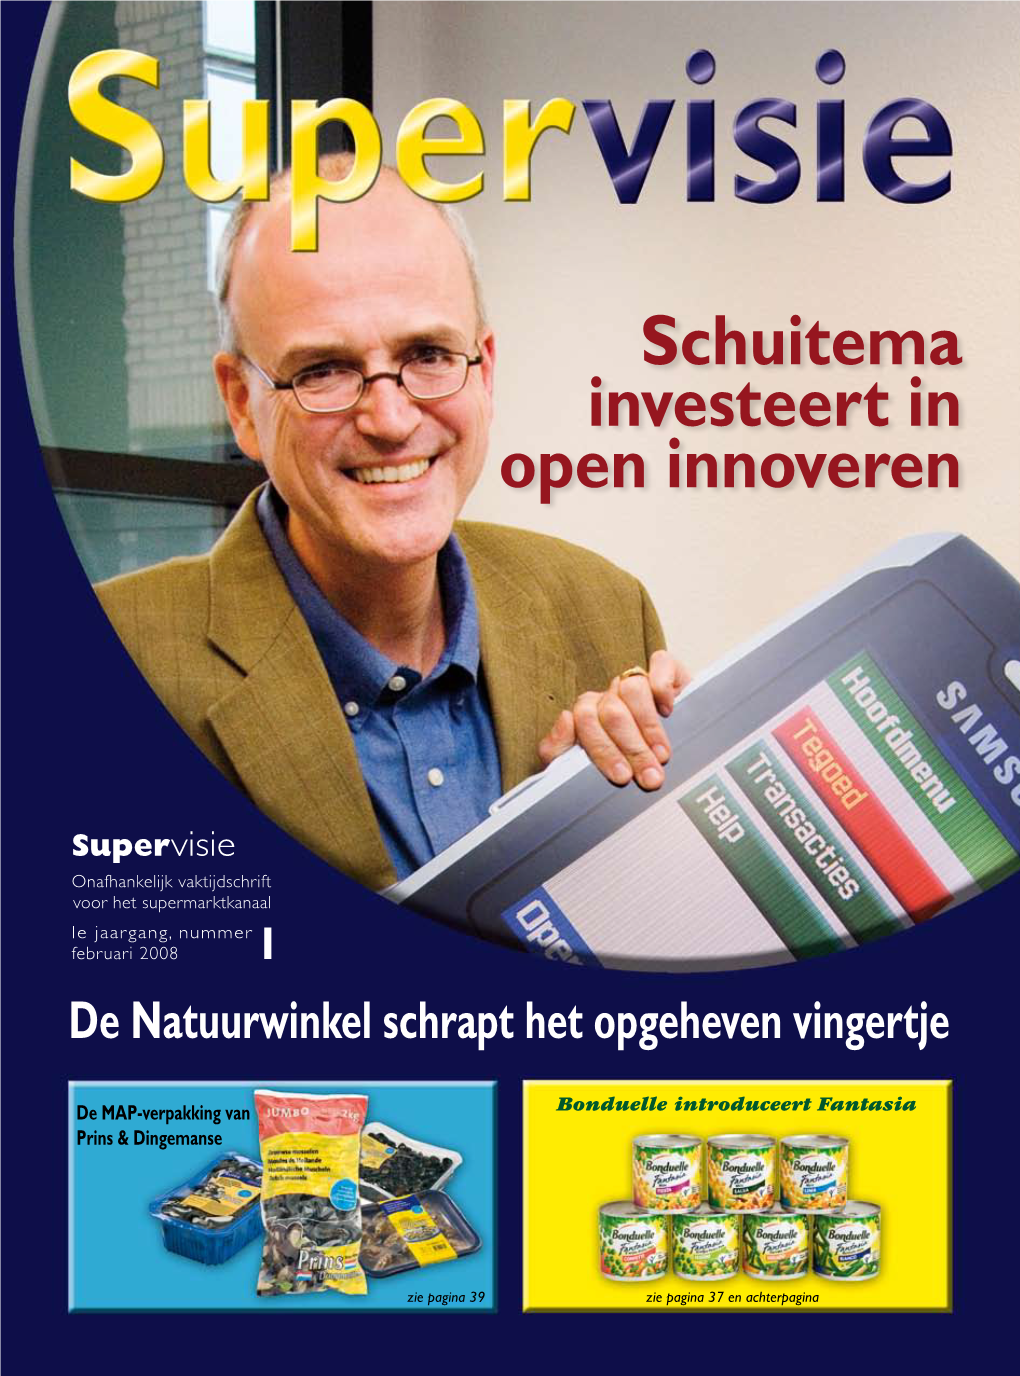 Supervisie Onafhankelijk Vaktijdschrift Voor Het Supermarktkanaal 1E Jaargang, Nummer Februari 2008 1 De Natuurwinkel Schrapt Het Opgeheven Vingertje